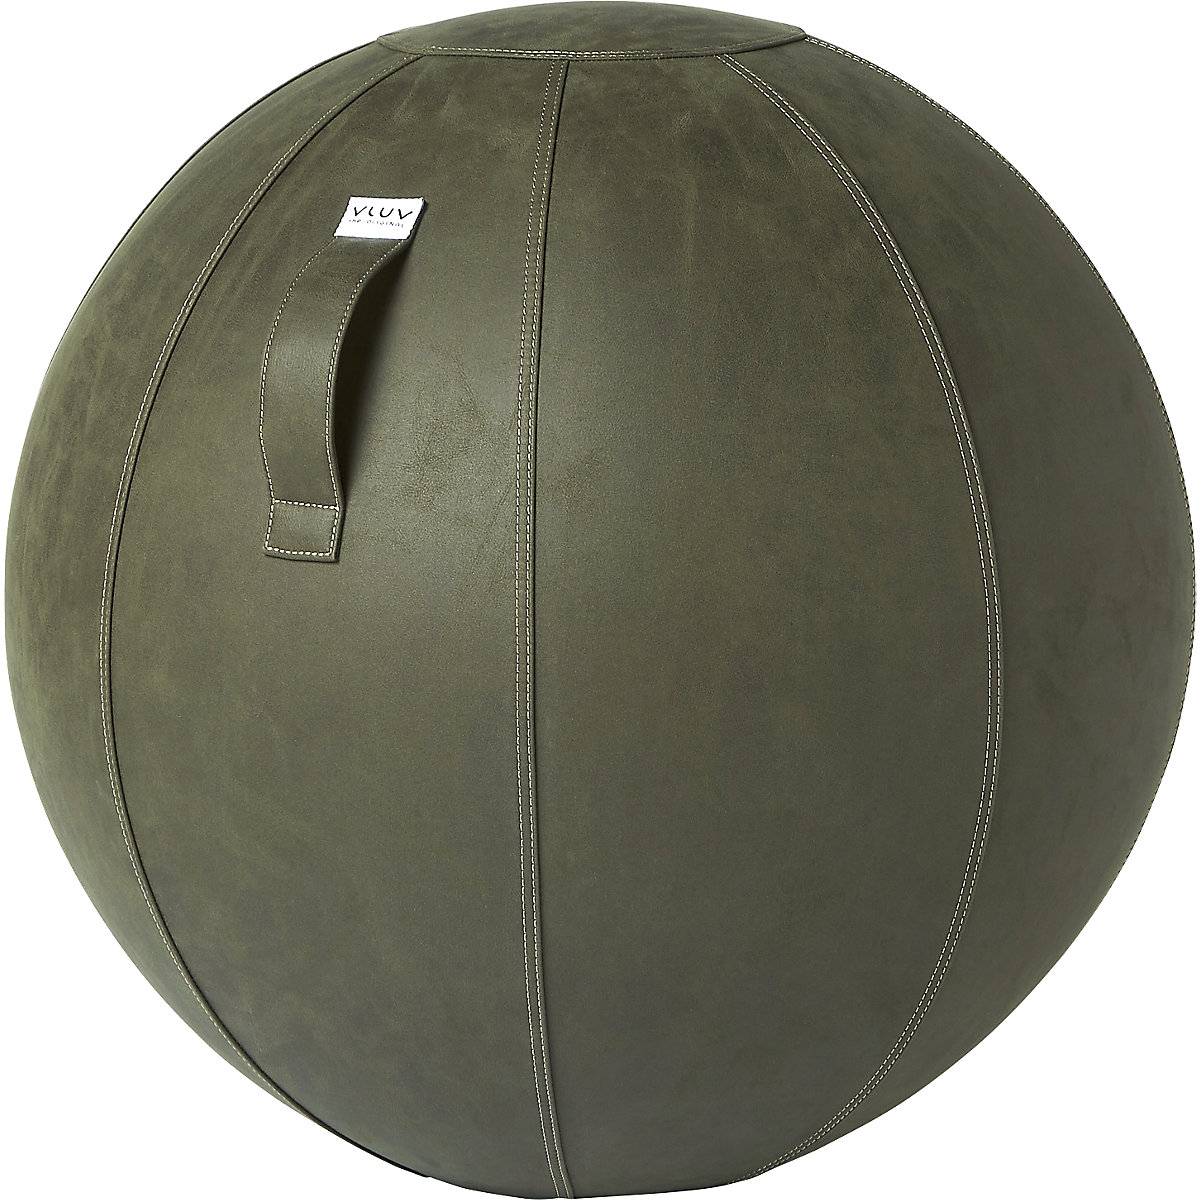 VLUV VEGA Sitzball, veganes Kunstleder, 700 – 750 mm, moosgrün